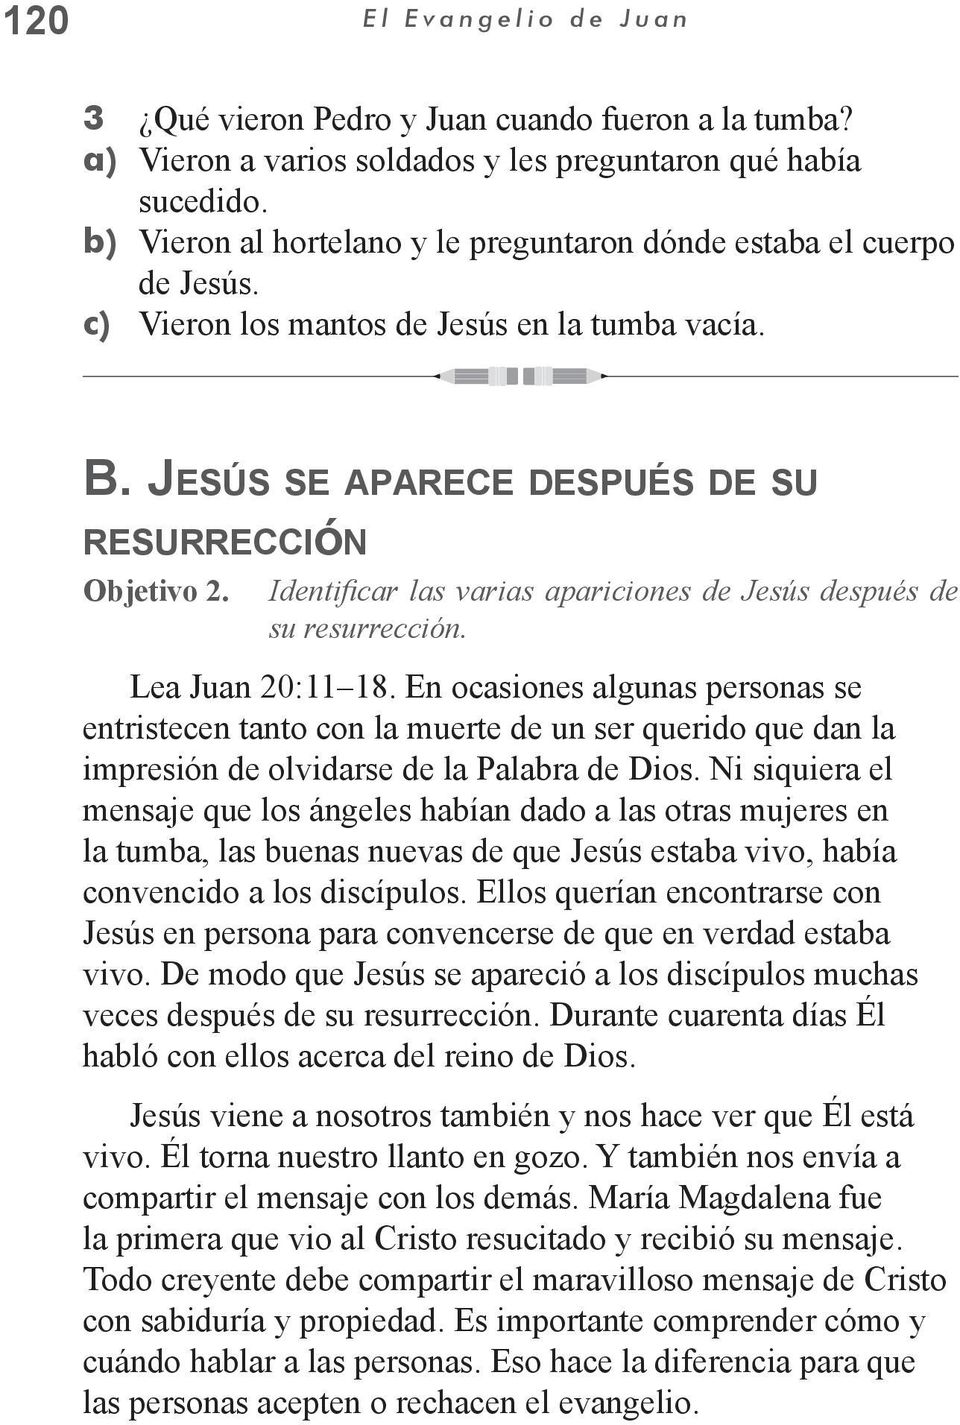 Identificar las varias apariciones de Jesús después de su resurrección. Lea Juan 20:11 18.